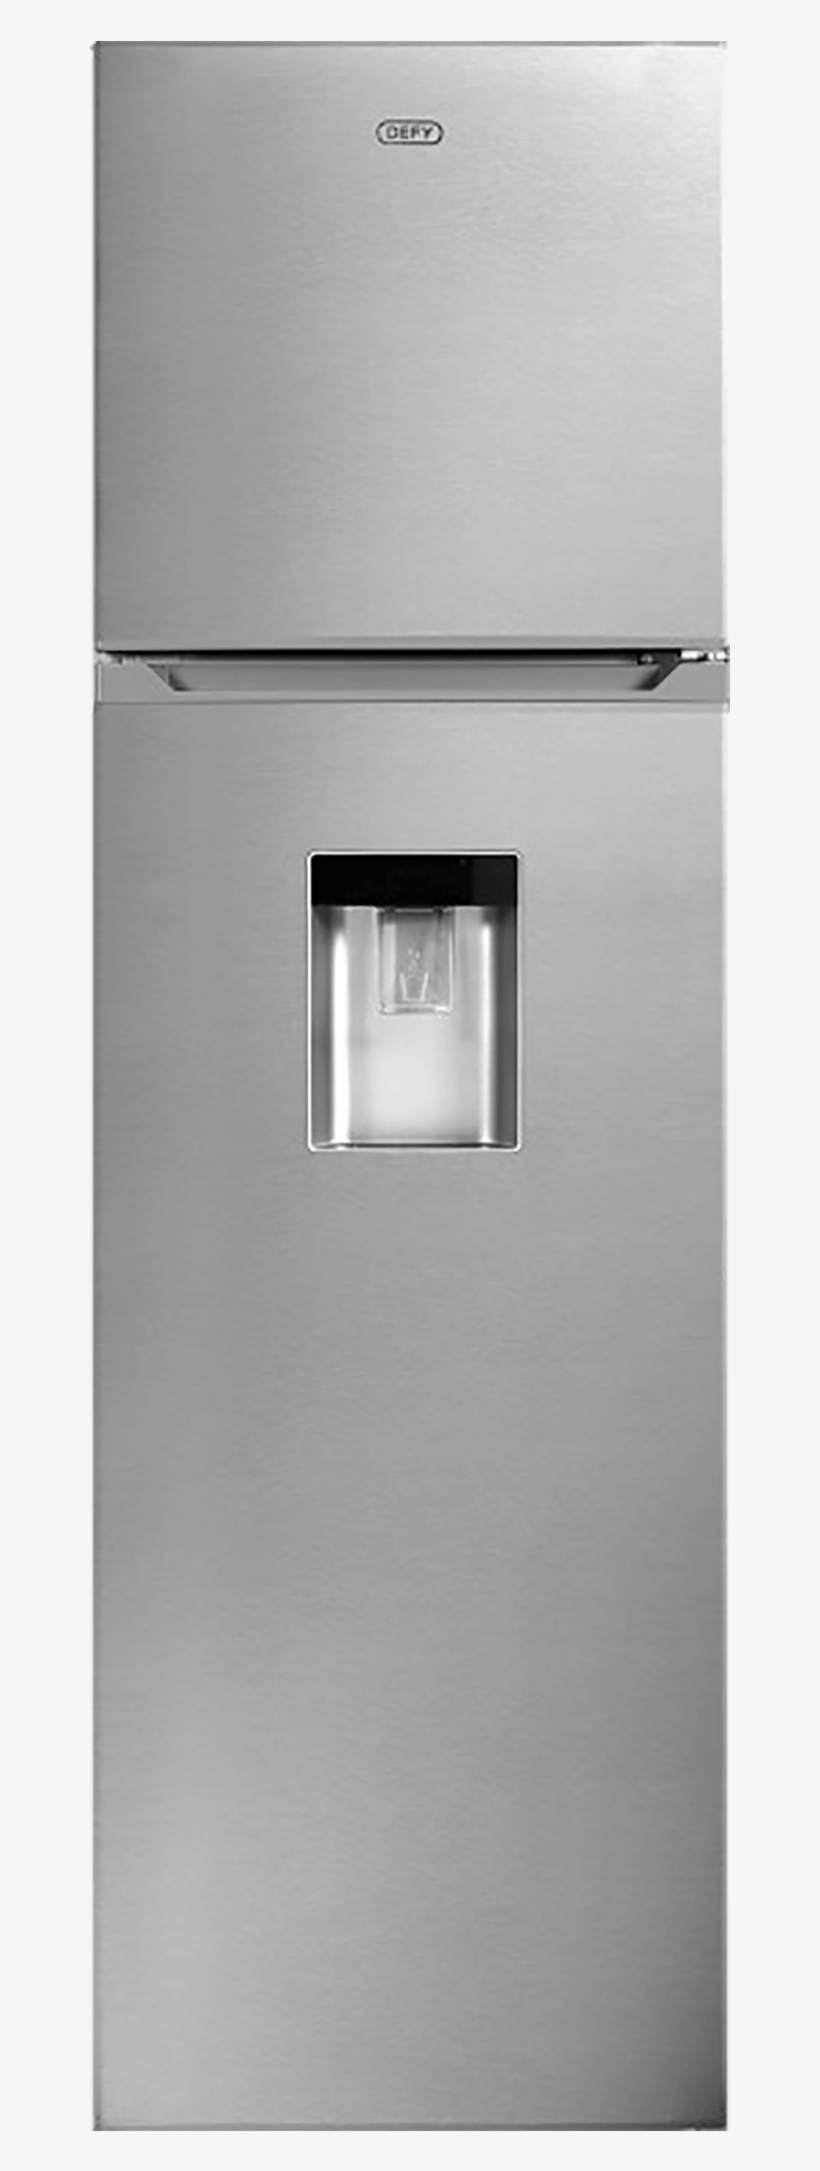 Double Door Fridge Model - Refrigerator, transparent png #9207650